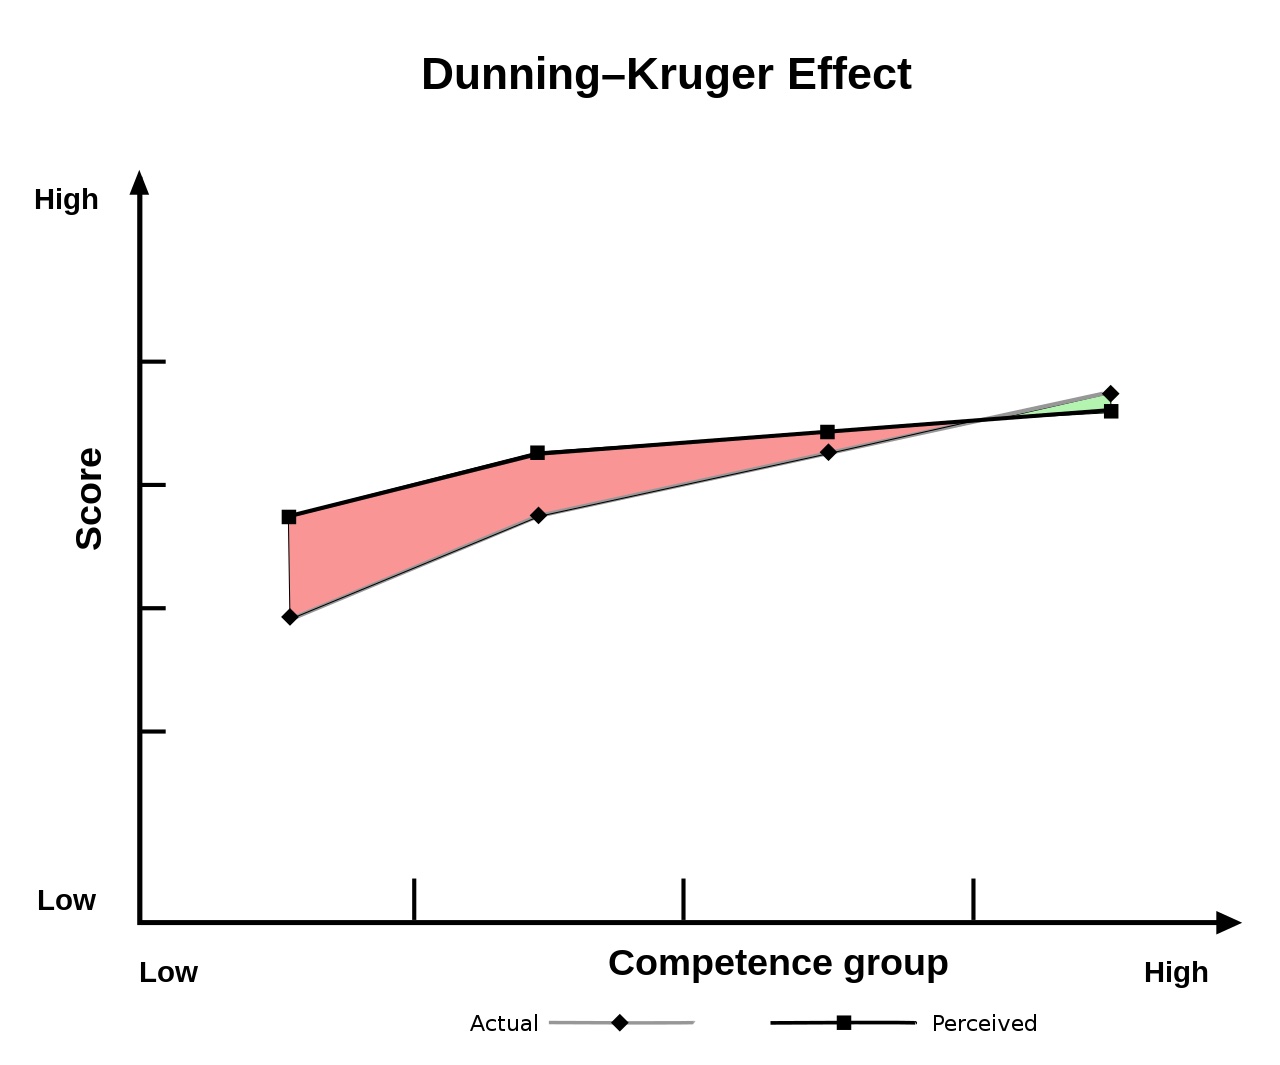 Dunning-Kruger effect